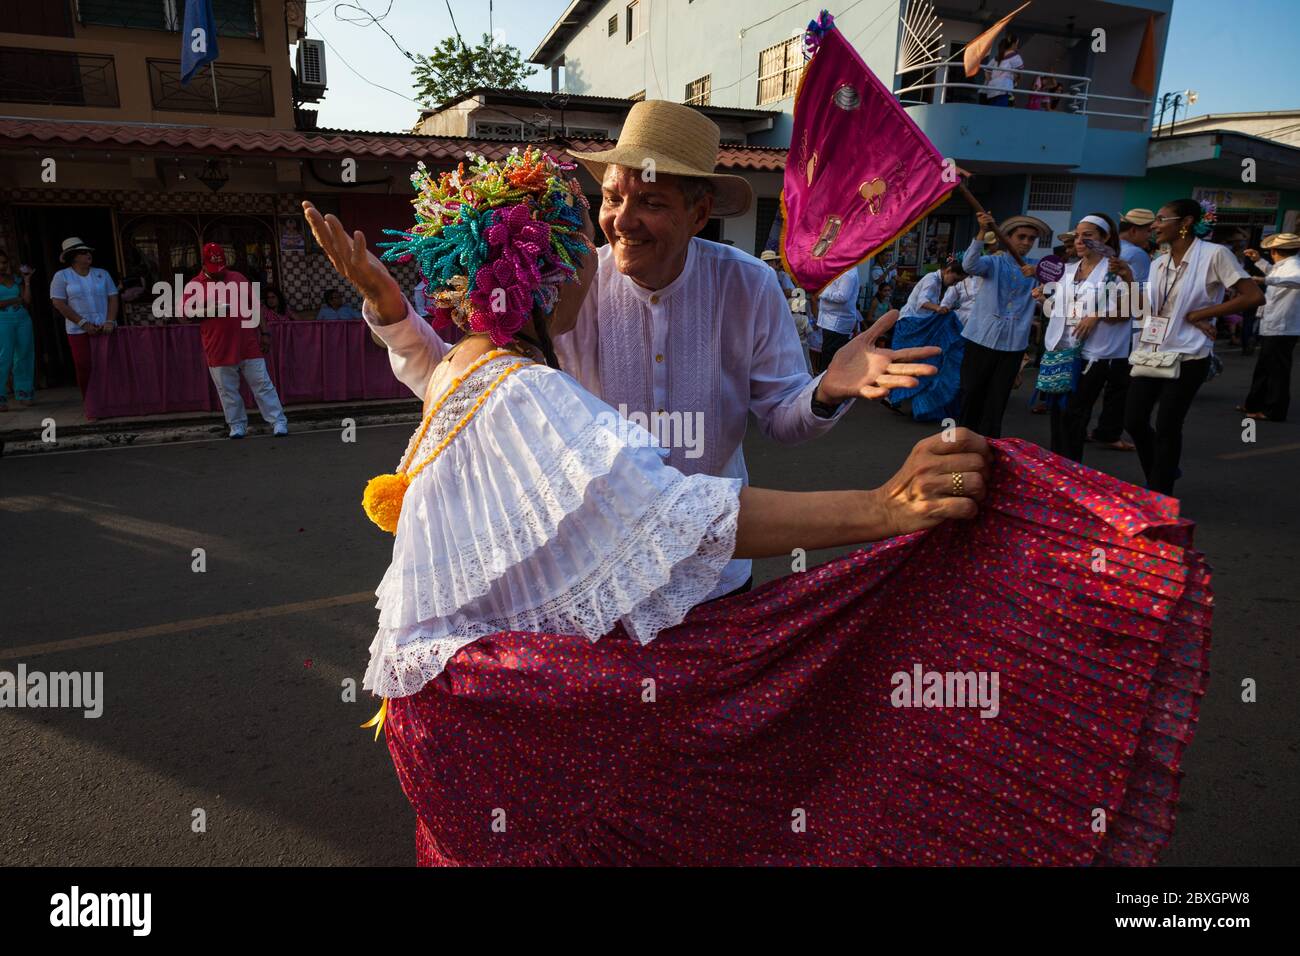 Man and woman dancing on the annual event "El desfile de las mil polleras"  (thousand polleras) in Las Tablas, Los Santos province, Republic of Panama  Stock Photo - Alamy